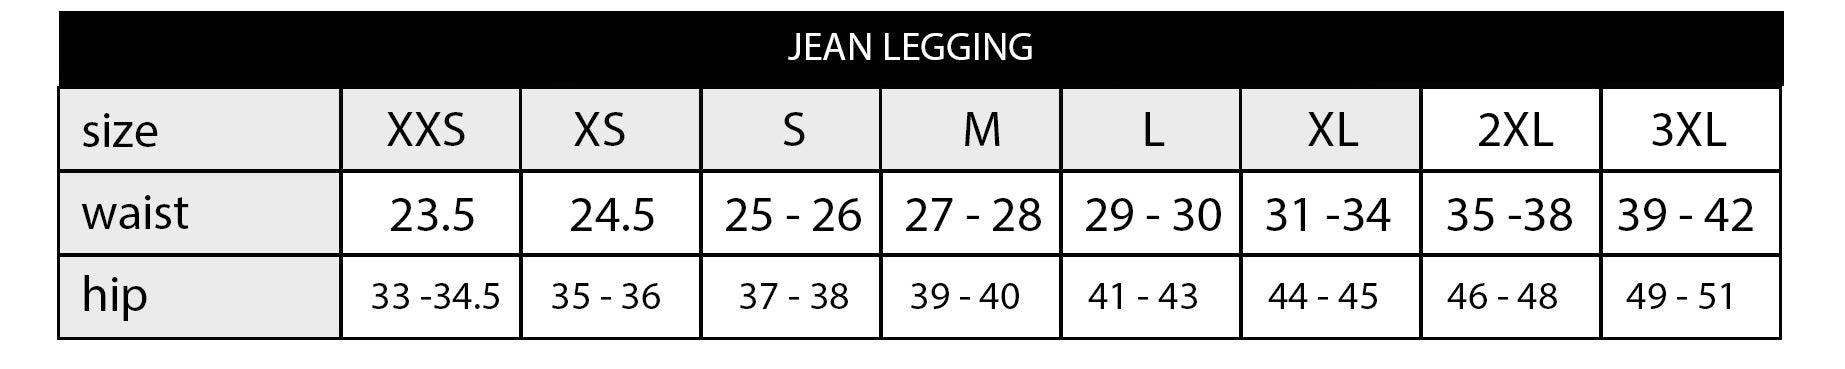 Women's jean leggings size chart